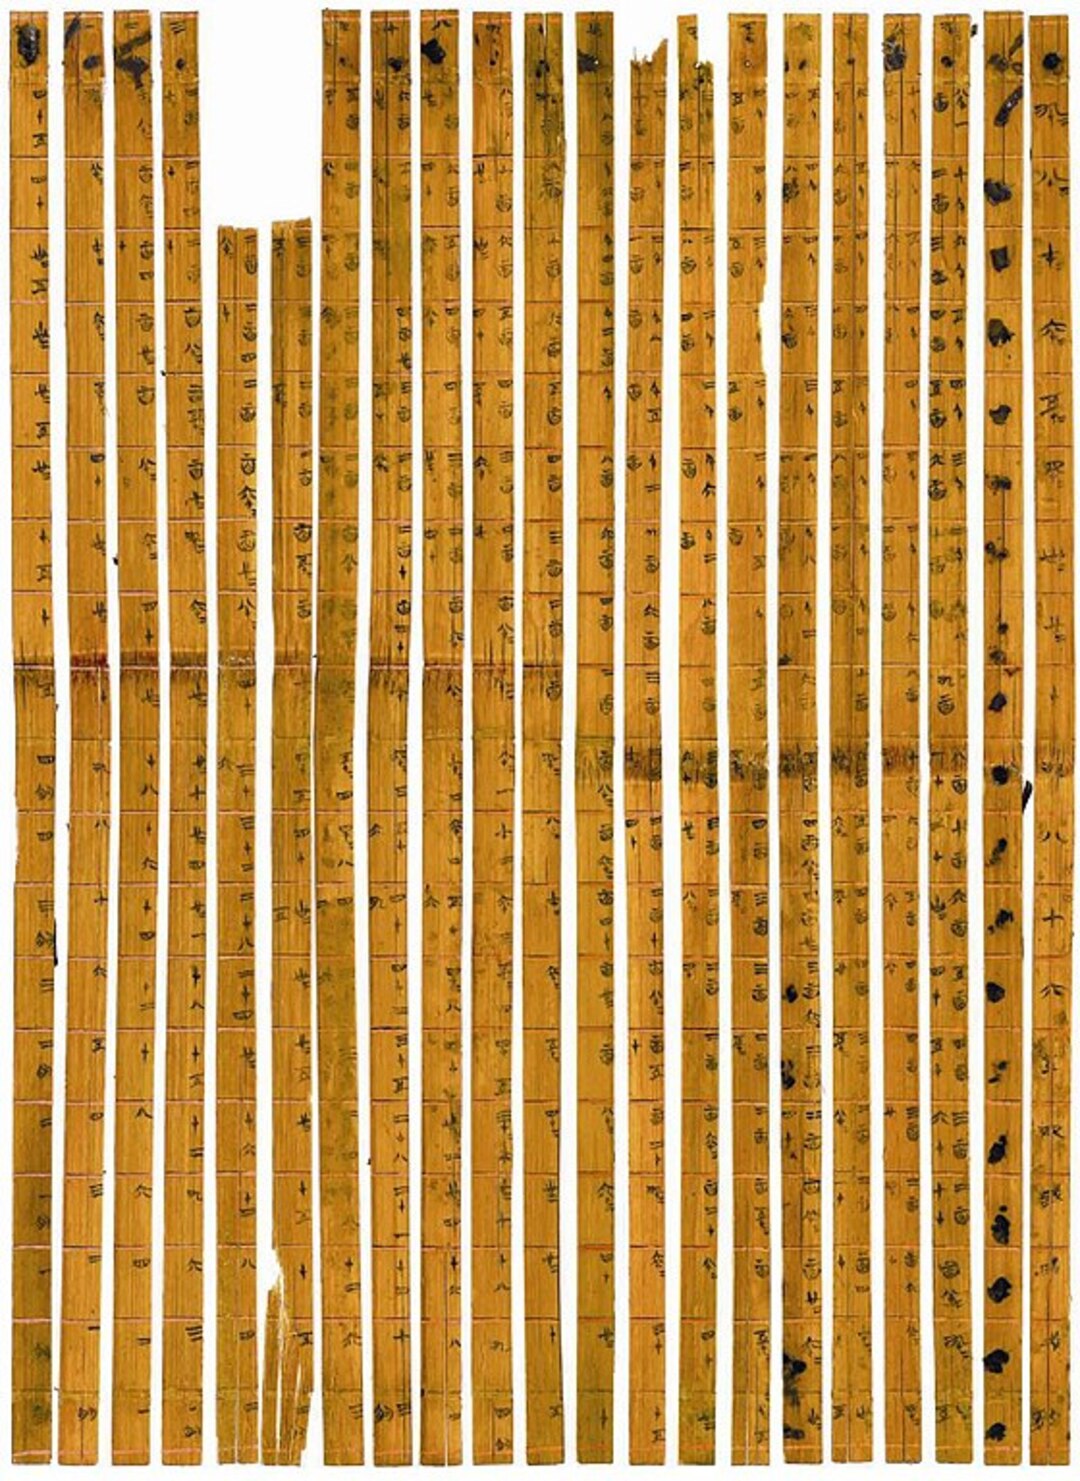 Ainda no embalo de descobertas históricas, pesquisadores da Universidade de Tsinghua, na China, traduziram cinco documentos em folhas de bambu que datam do período dos “Reinos de Batalha”, há mais de dois mil anos. 